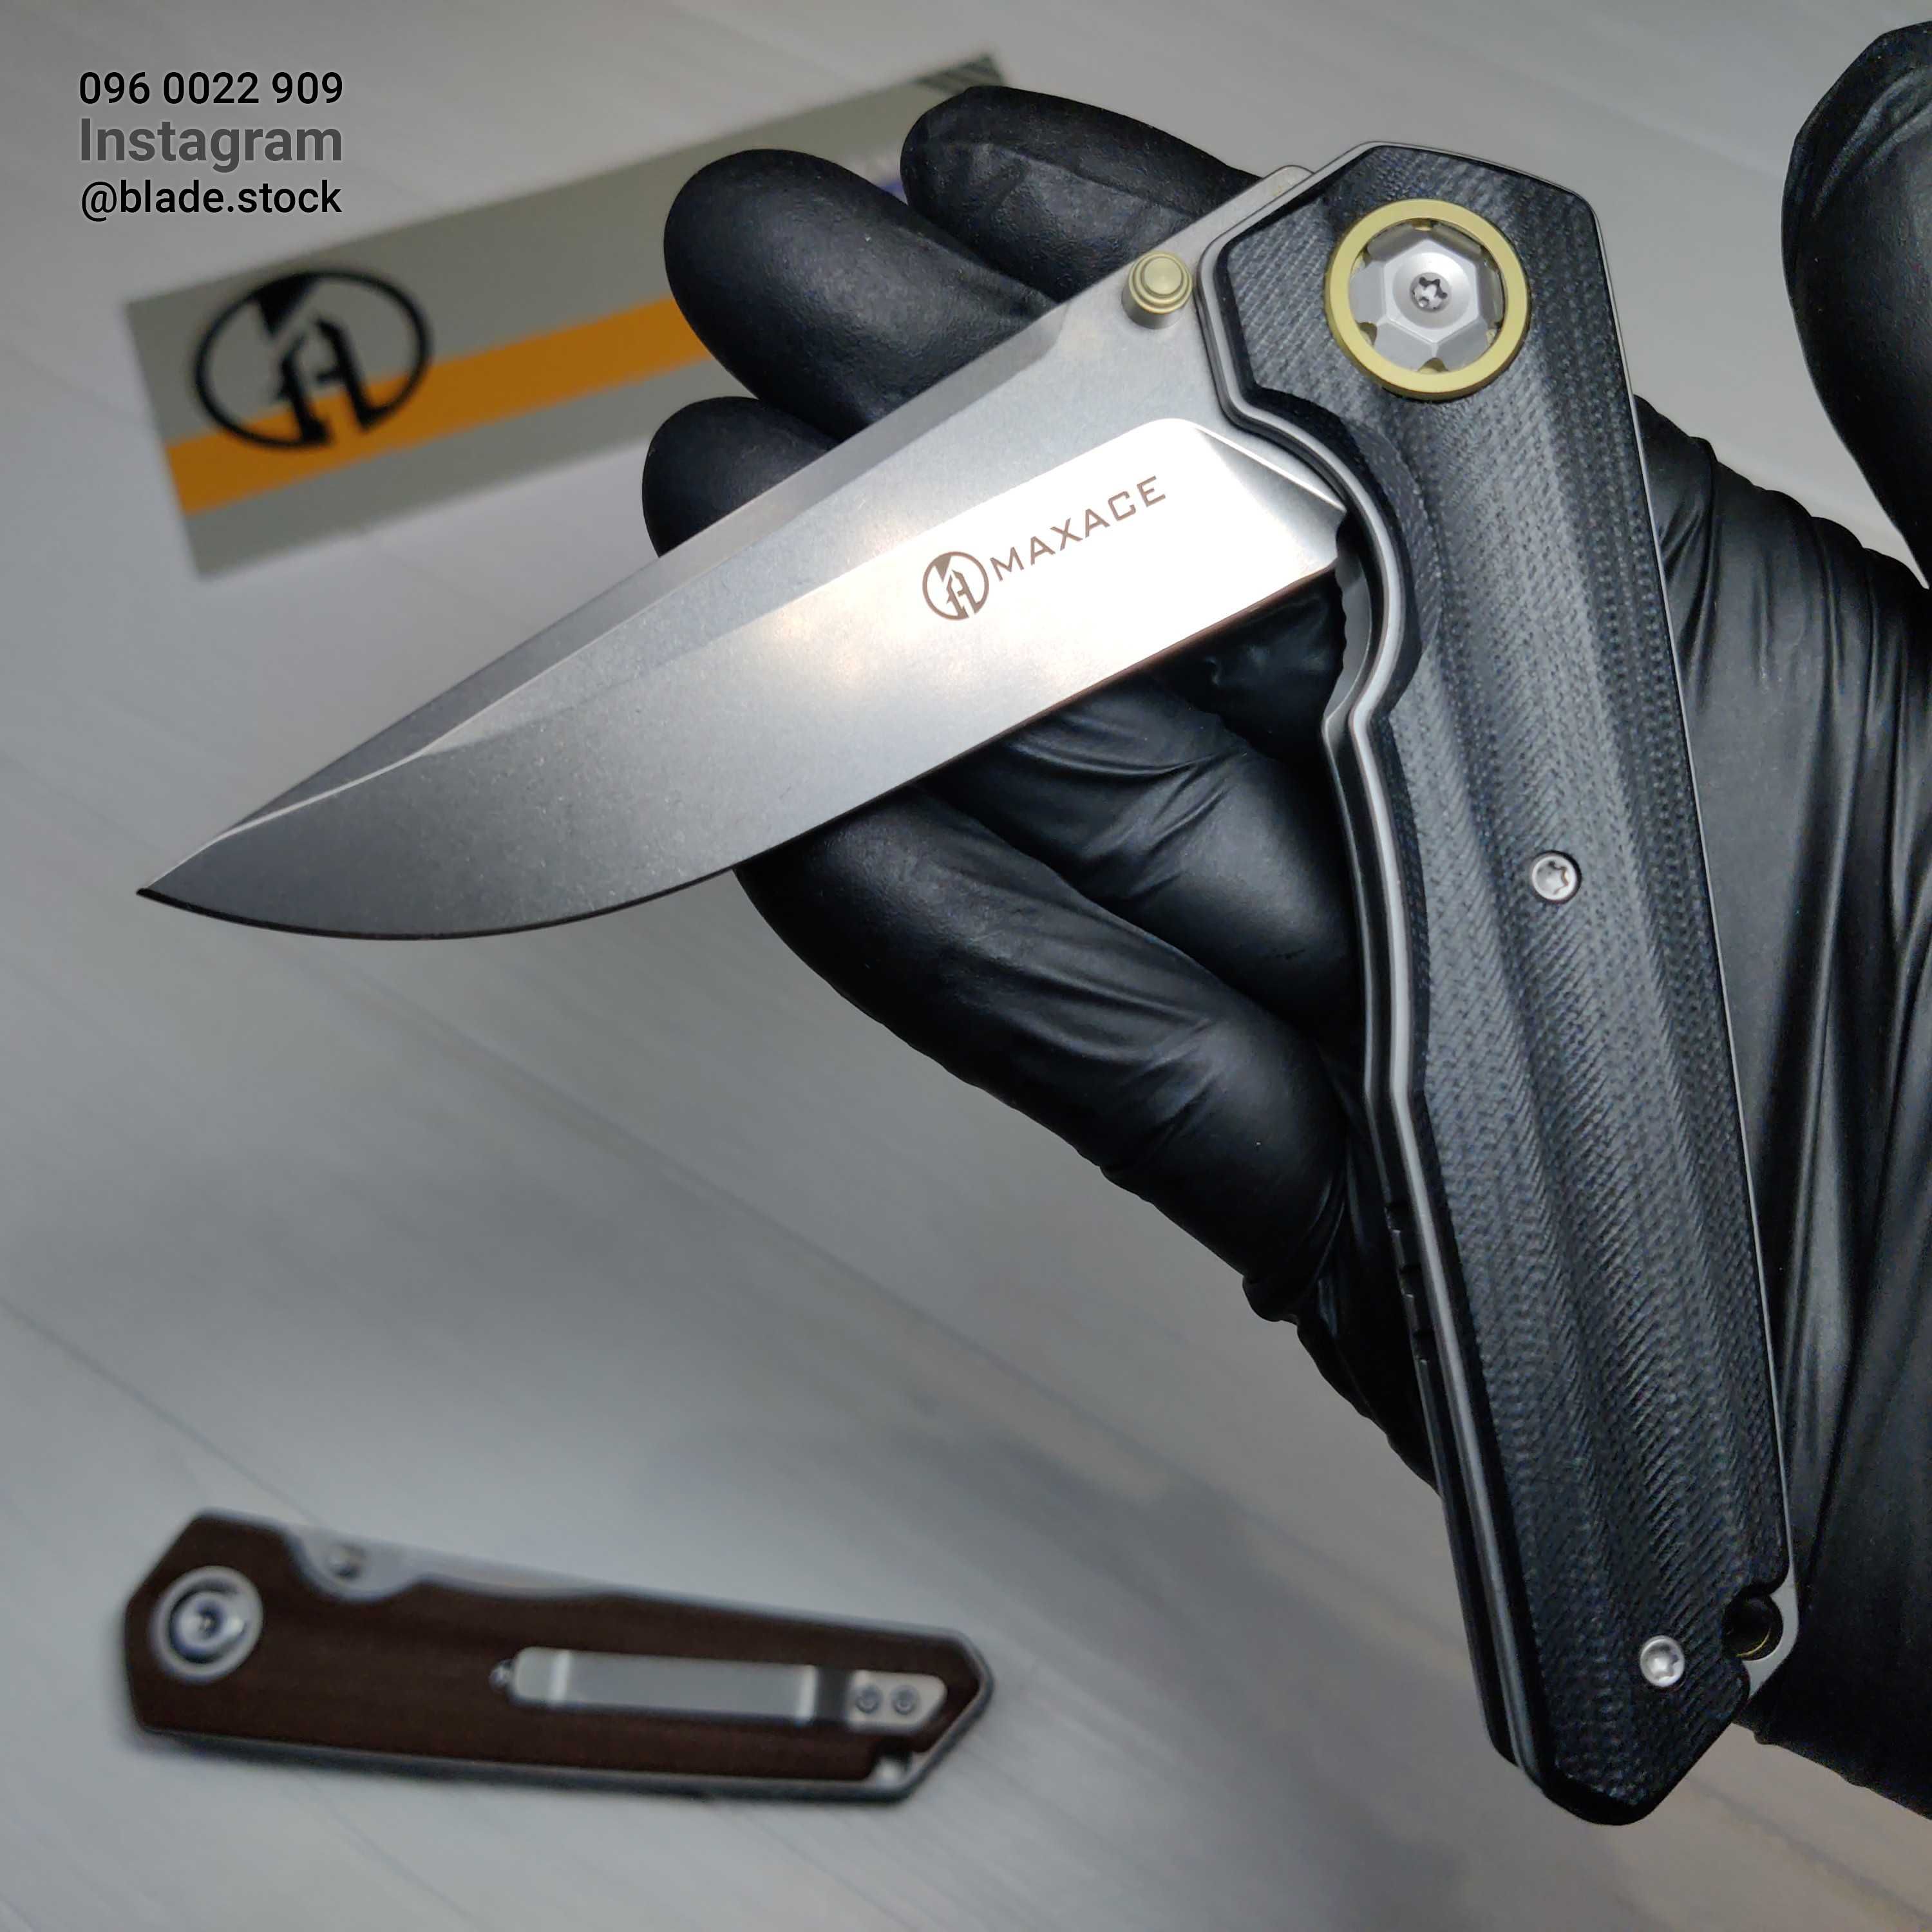 Maxace Samurai сталь K110 (оригінал) складний карманний ніж